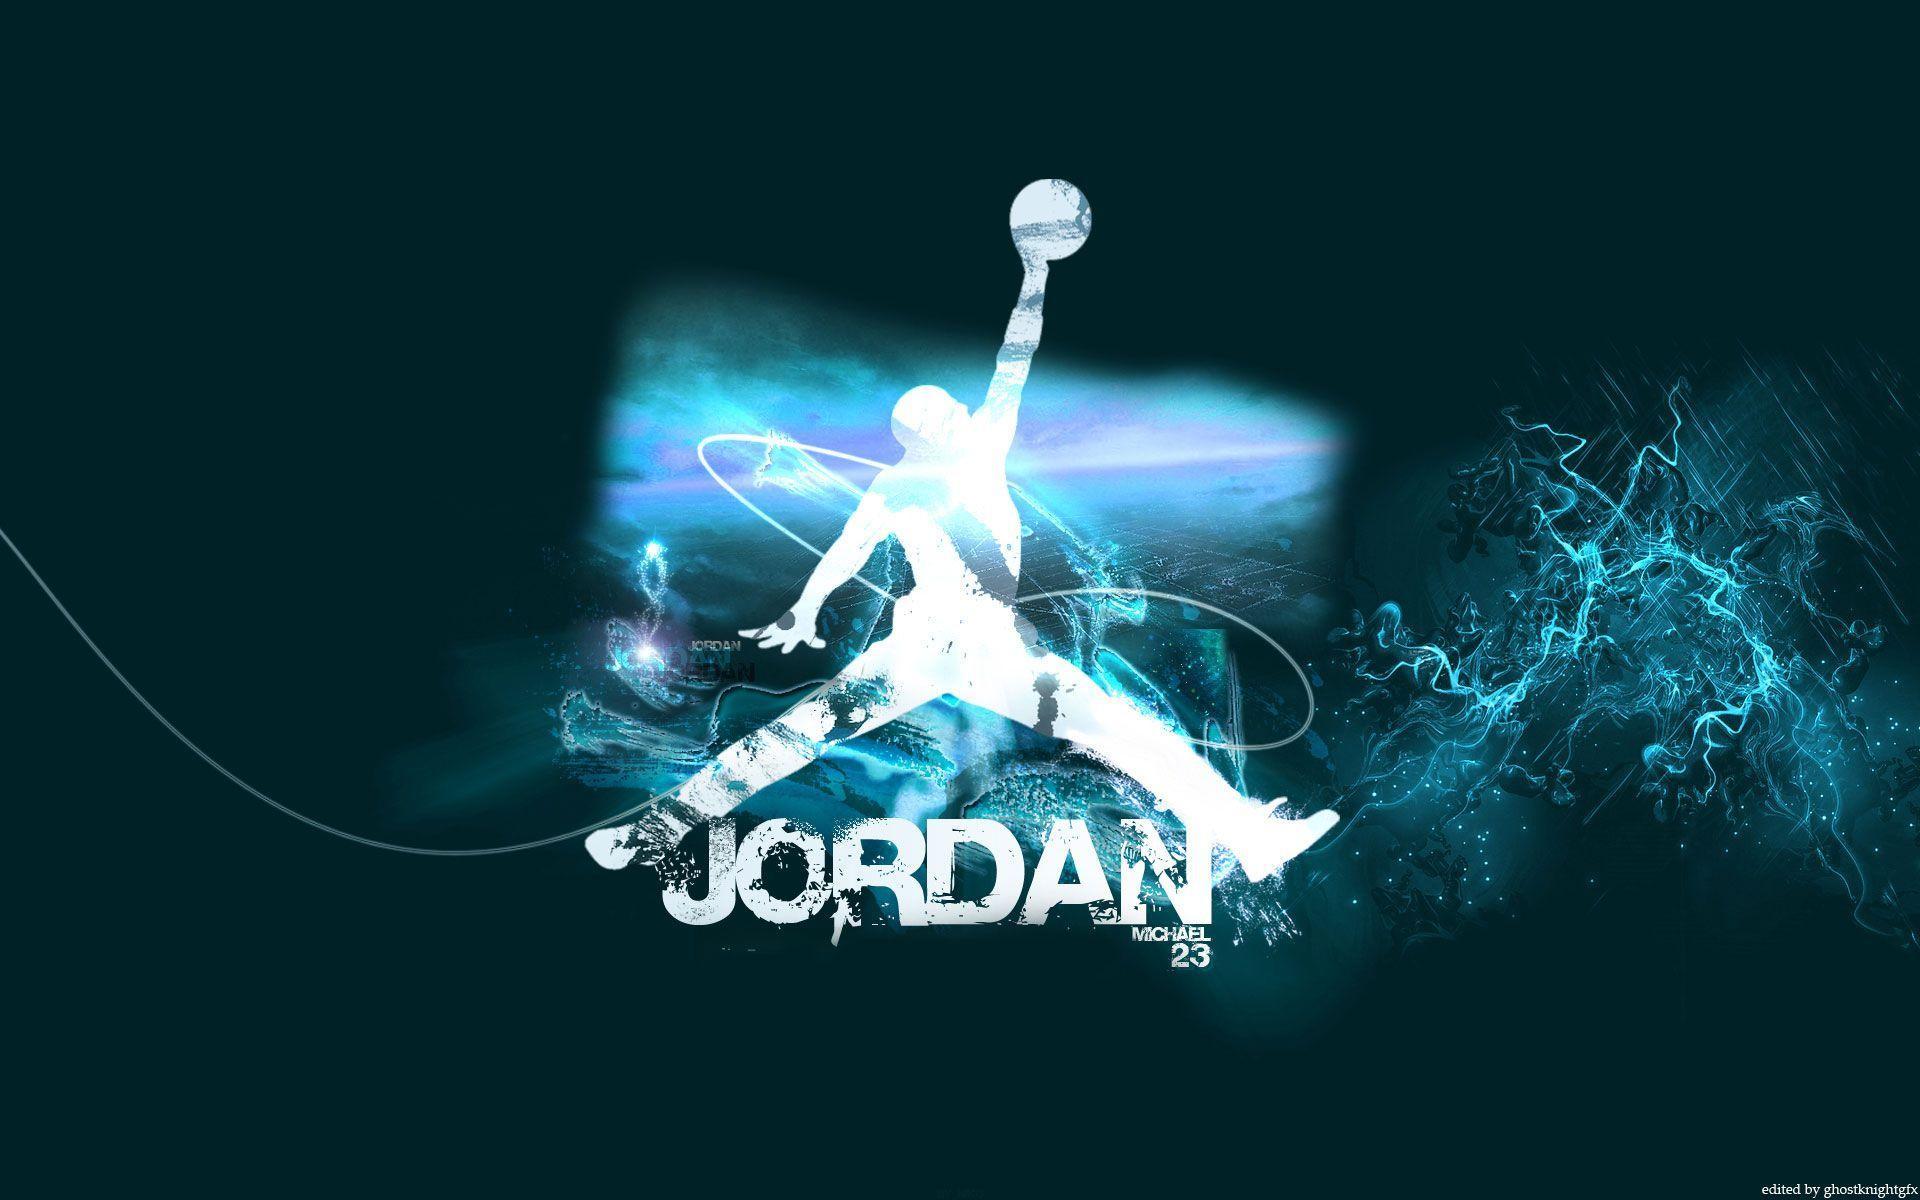 Michael Jordan Wallpaper. Basketball Wallpaper at